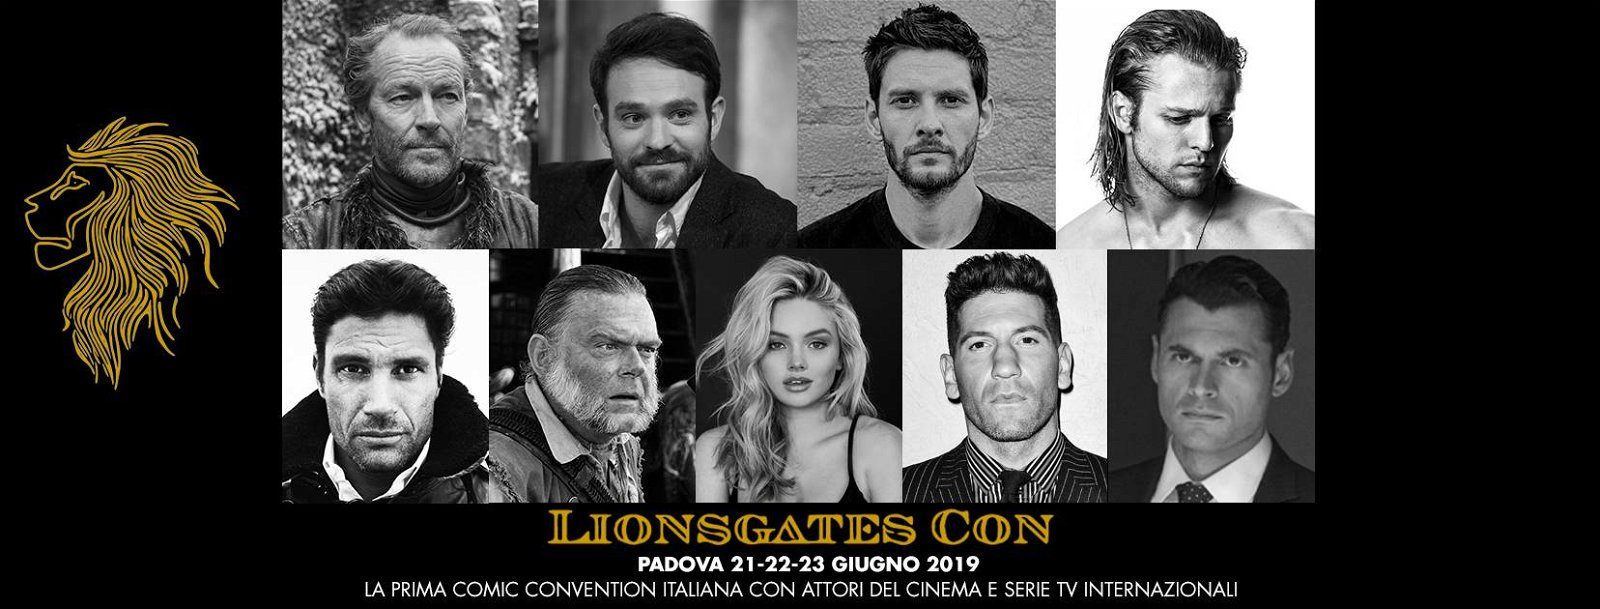 Immagine di Lionsgate Con: l'evento posticipato a settembre 2019